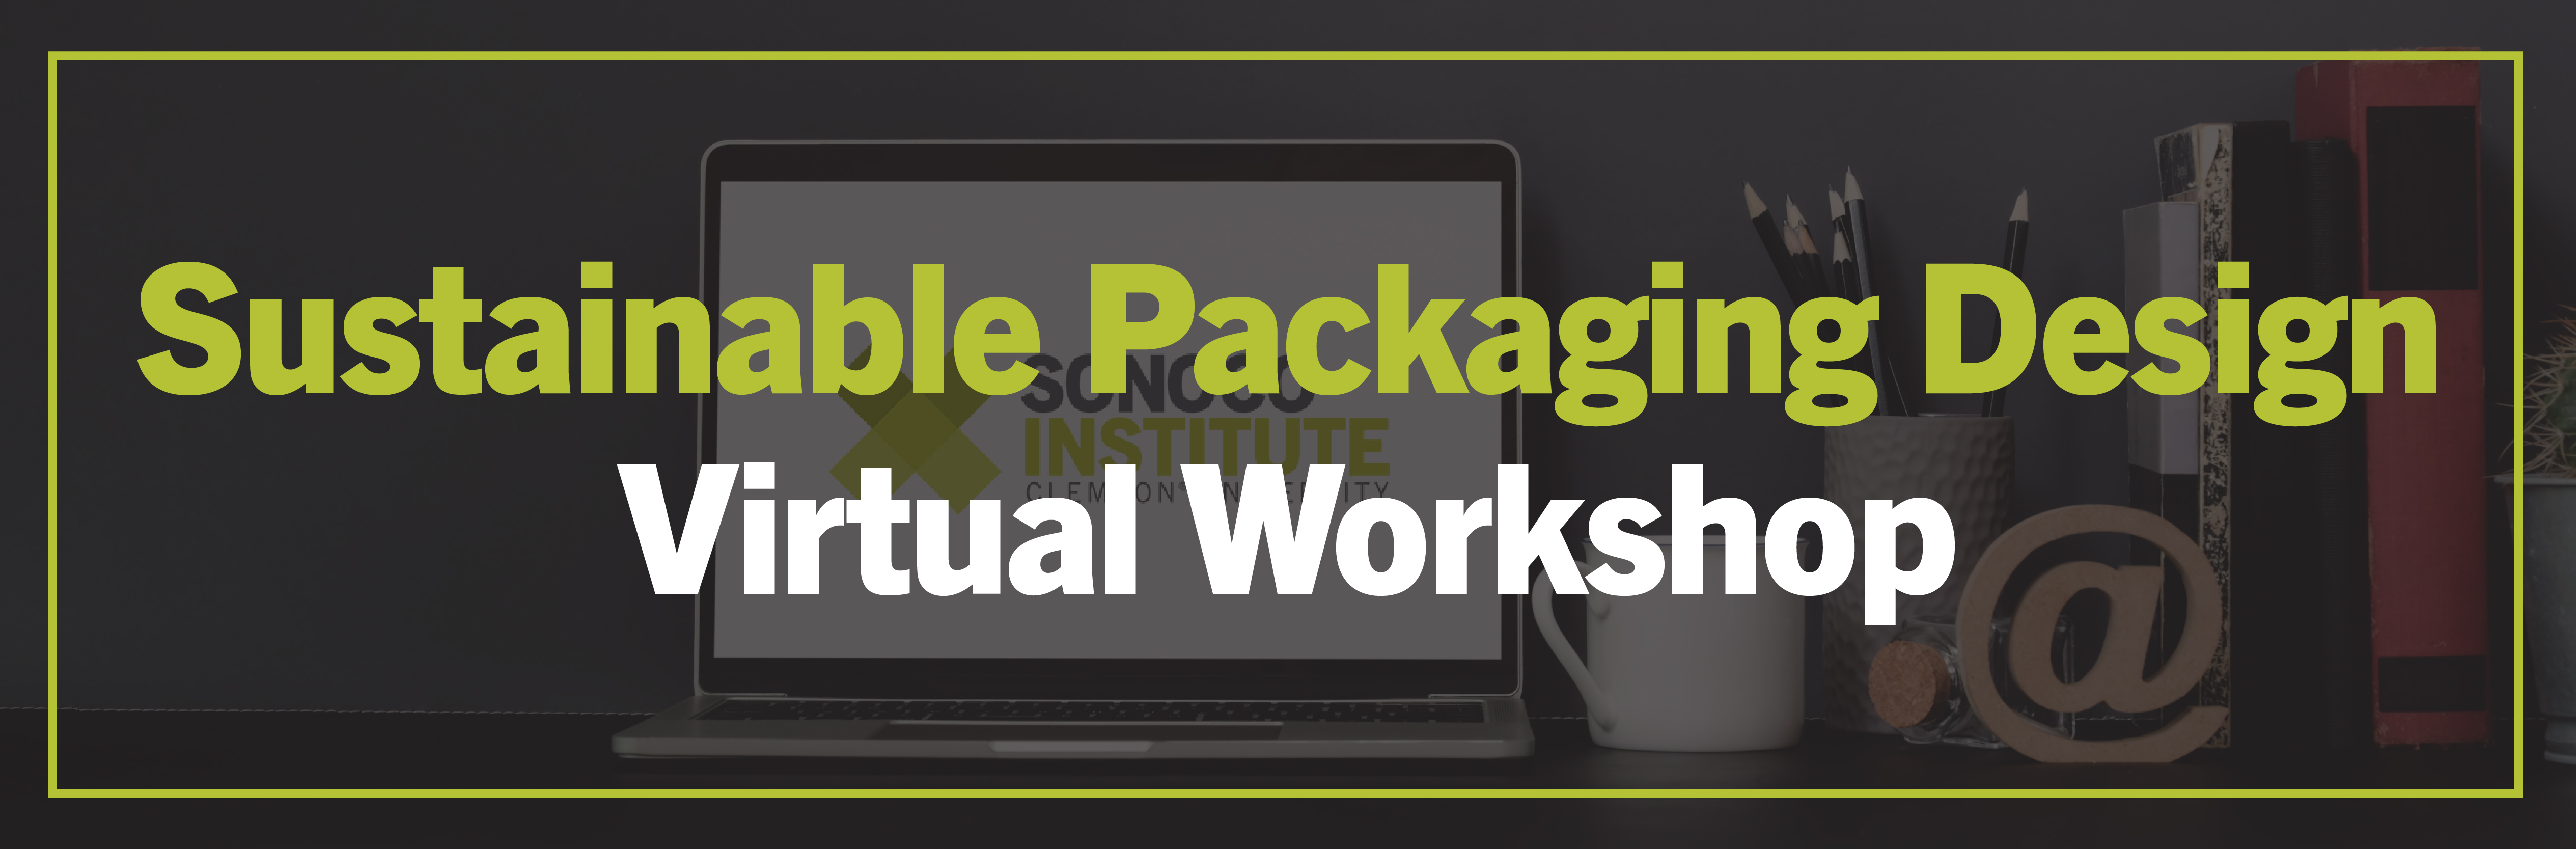 Sustainable Packaging Design Virtual Workshop